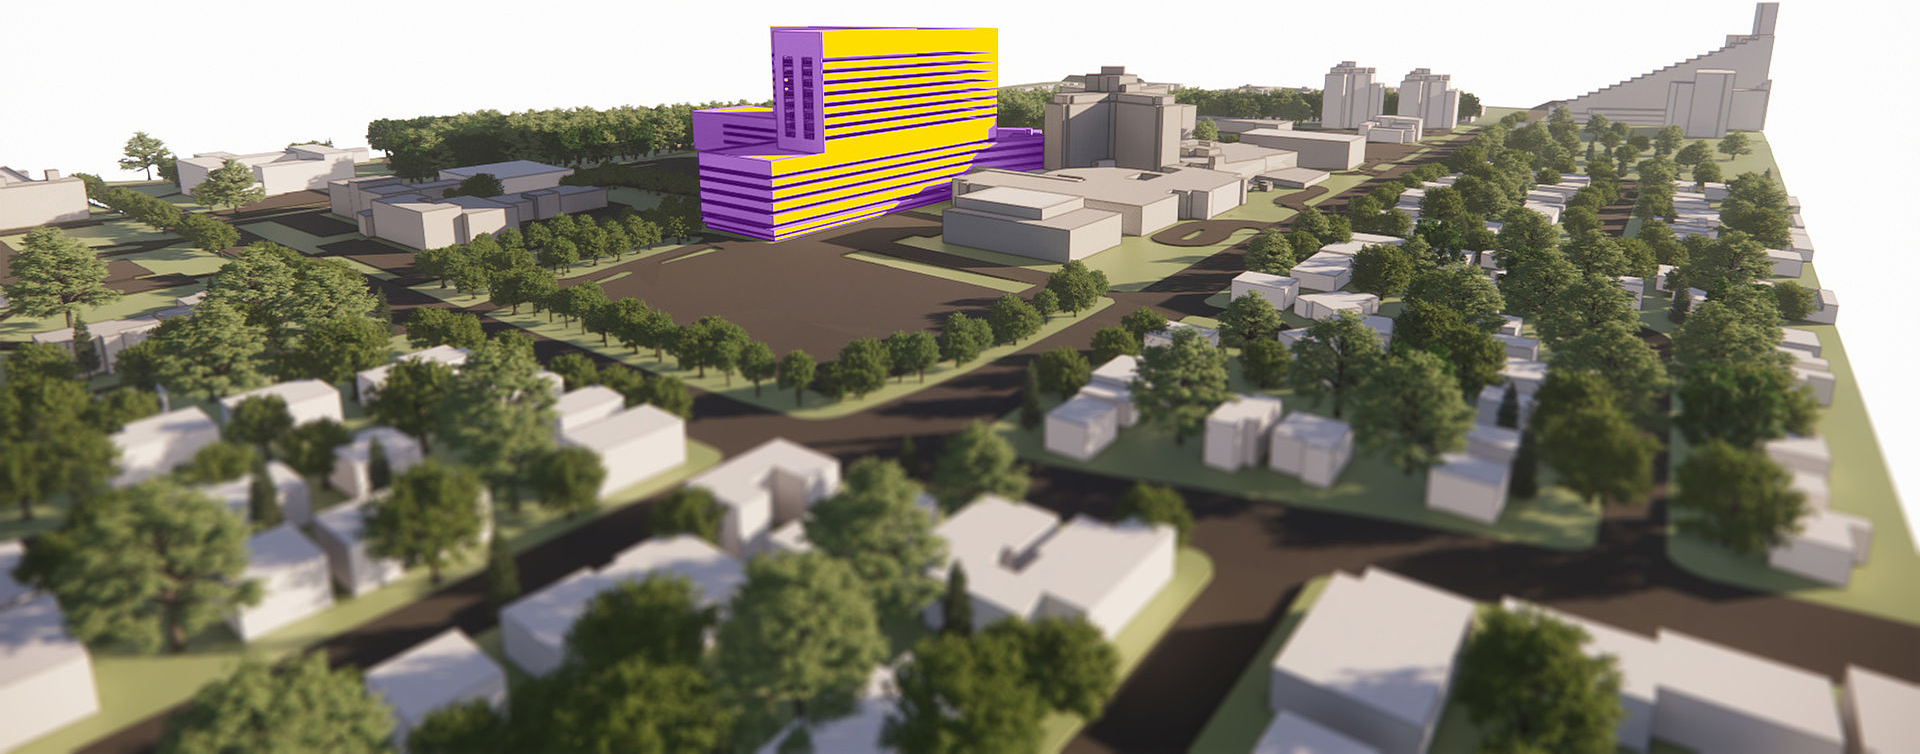 Rendu architectural du nouvel Hôpital Maisonneuve-Rosemont